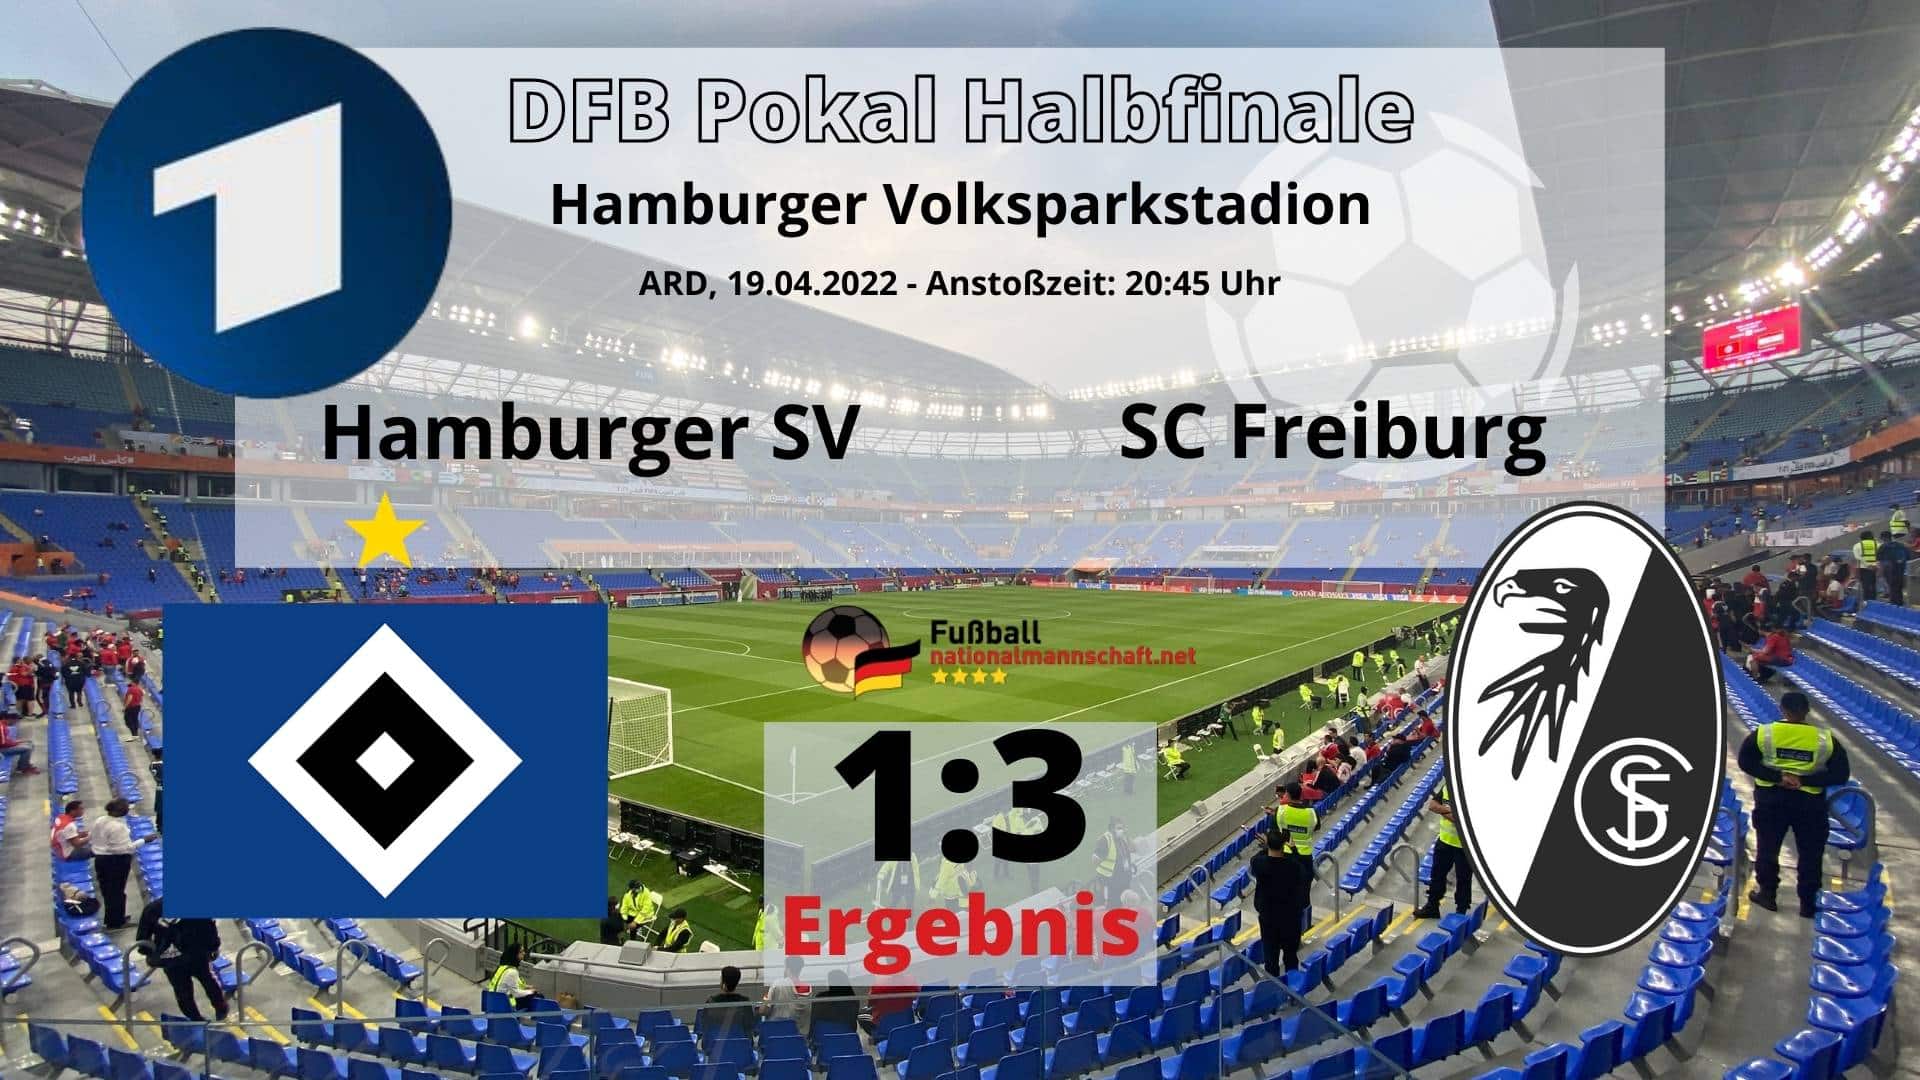 Fußball heute Abend ** Ergebnis 13 ** ARD live heute DFB Pokal Hamburger SV gegen SC Freiburg ** Halbfinale